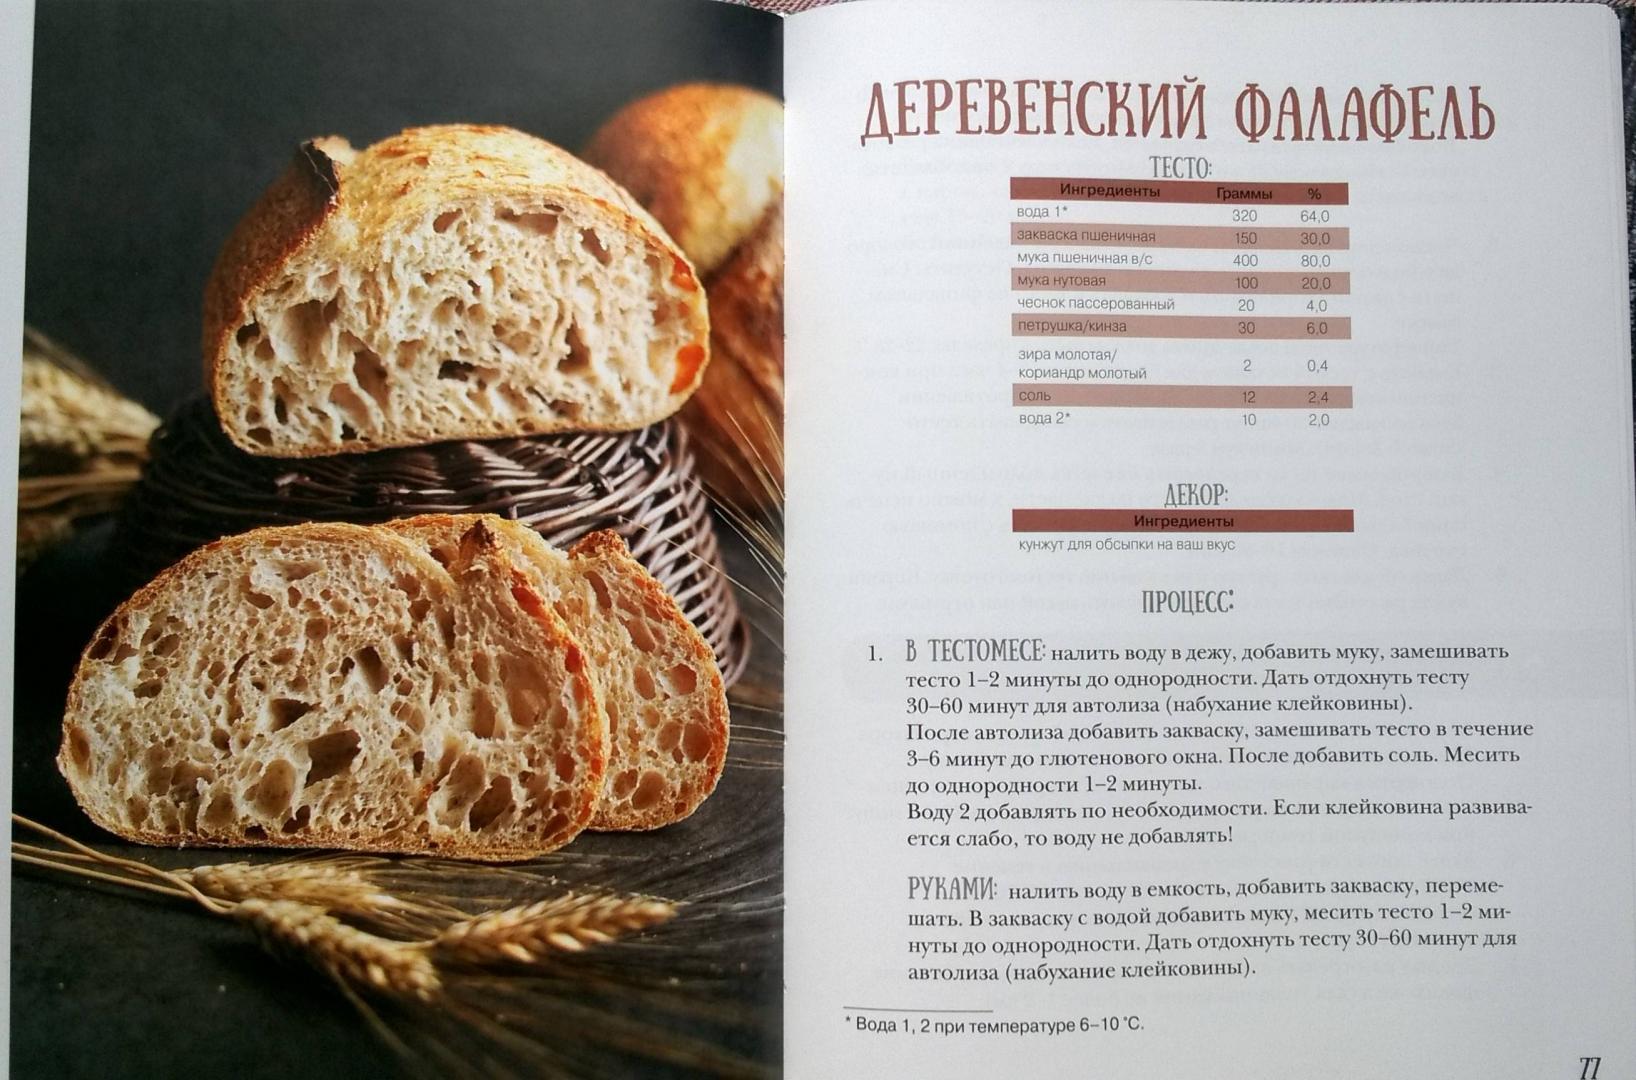 1000 рецепты хлеба. Забавников хлеб книга.